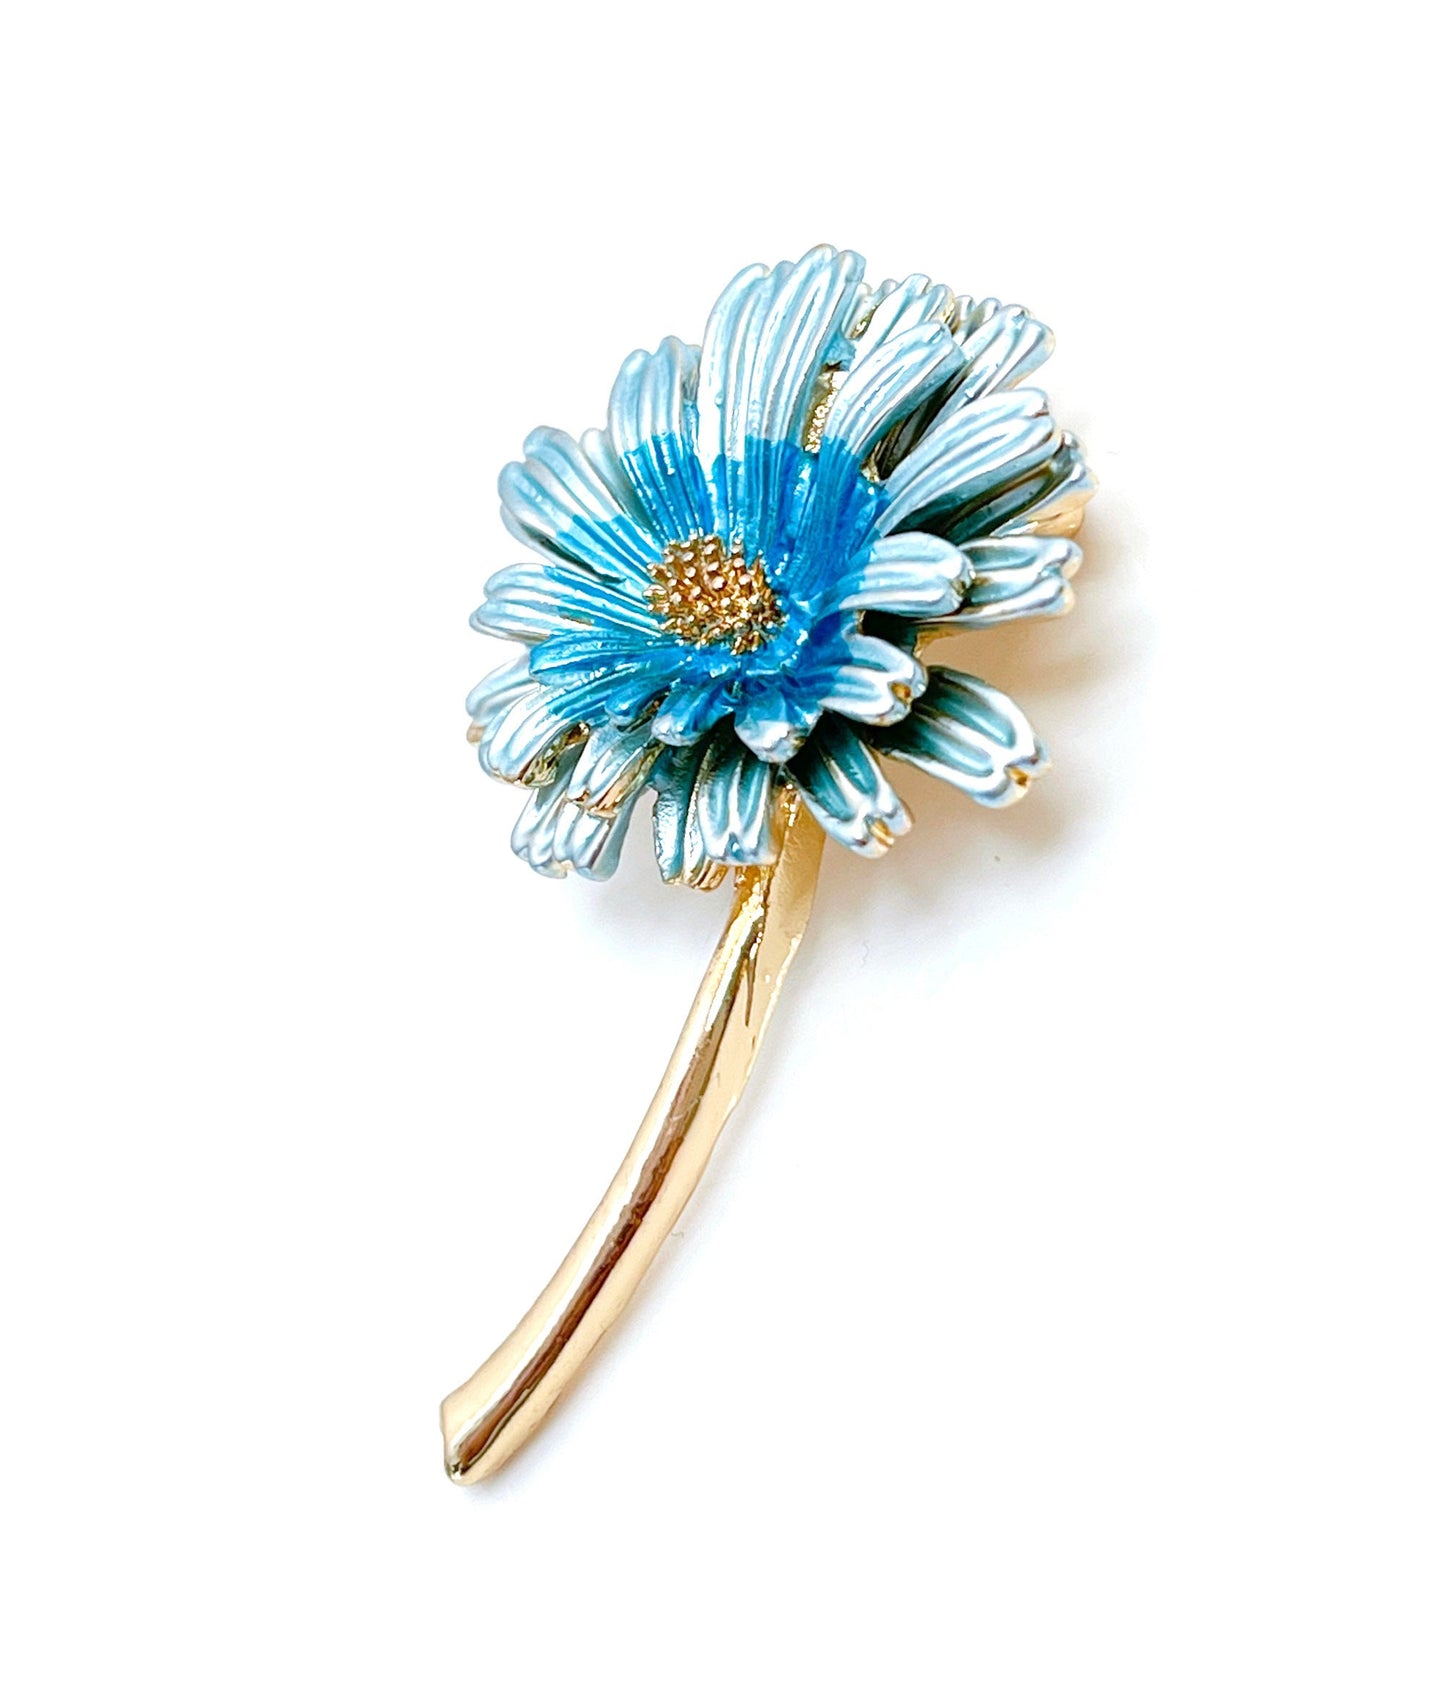 Pretty Blue Daisy Brooch | Ombre Blue Flower Jacket Pin